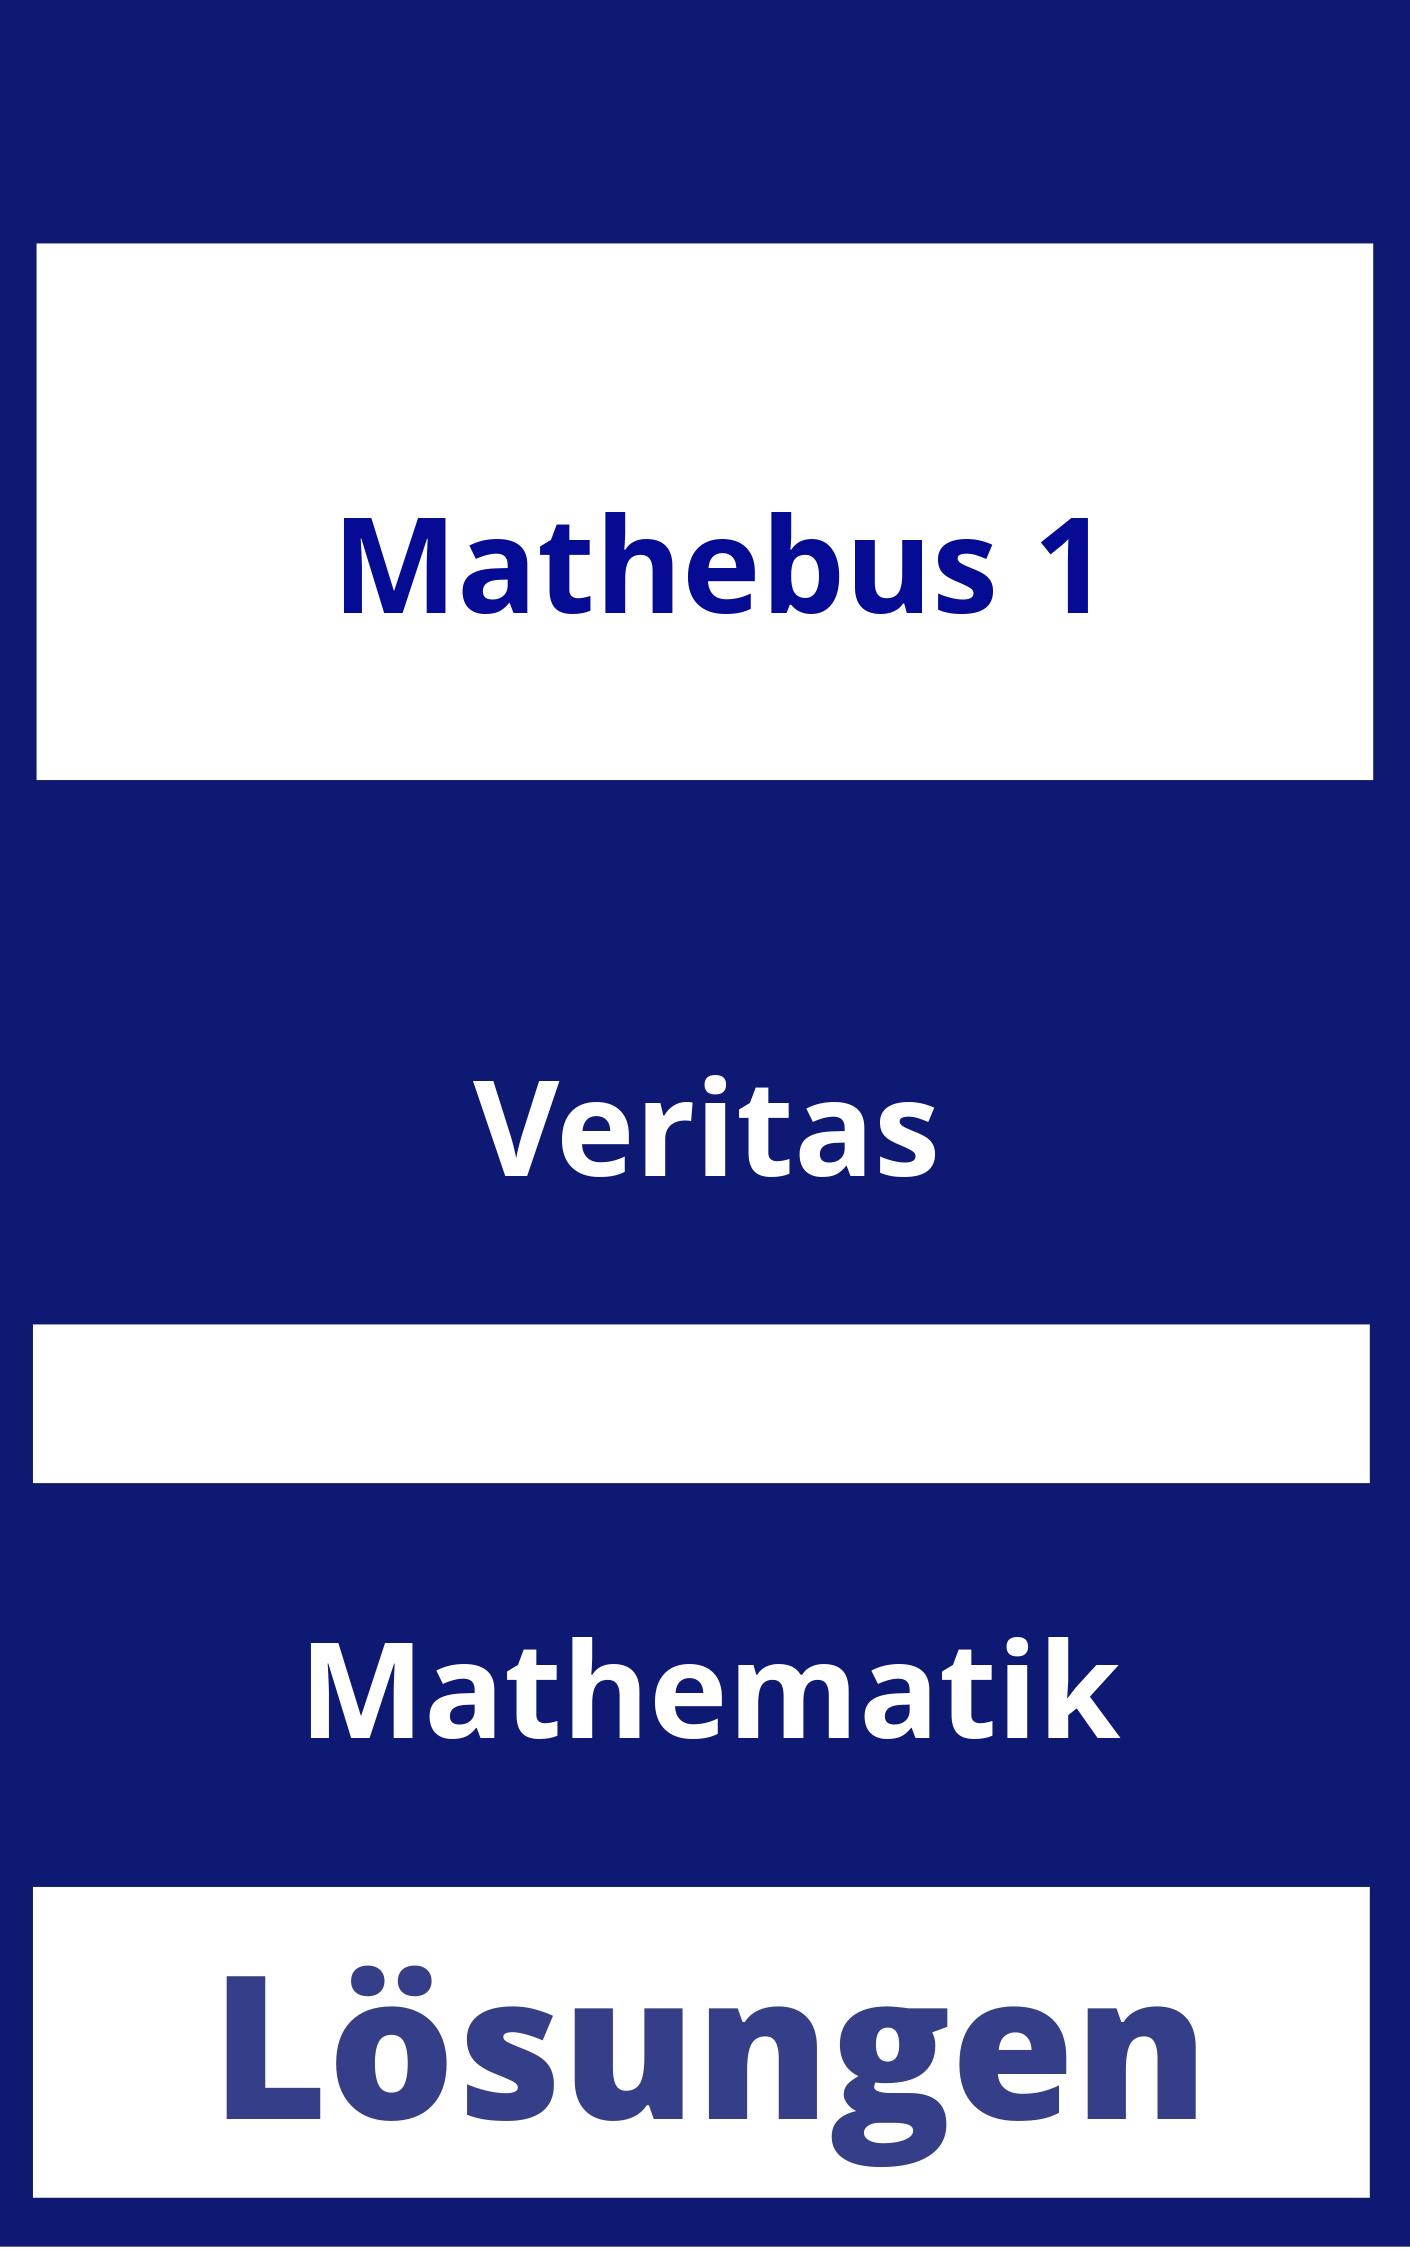 Mathebus 1 Lösungen PDF